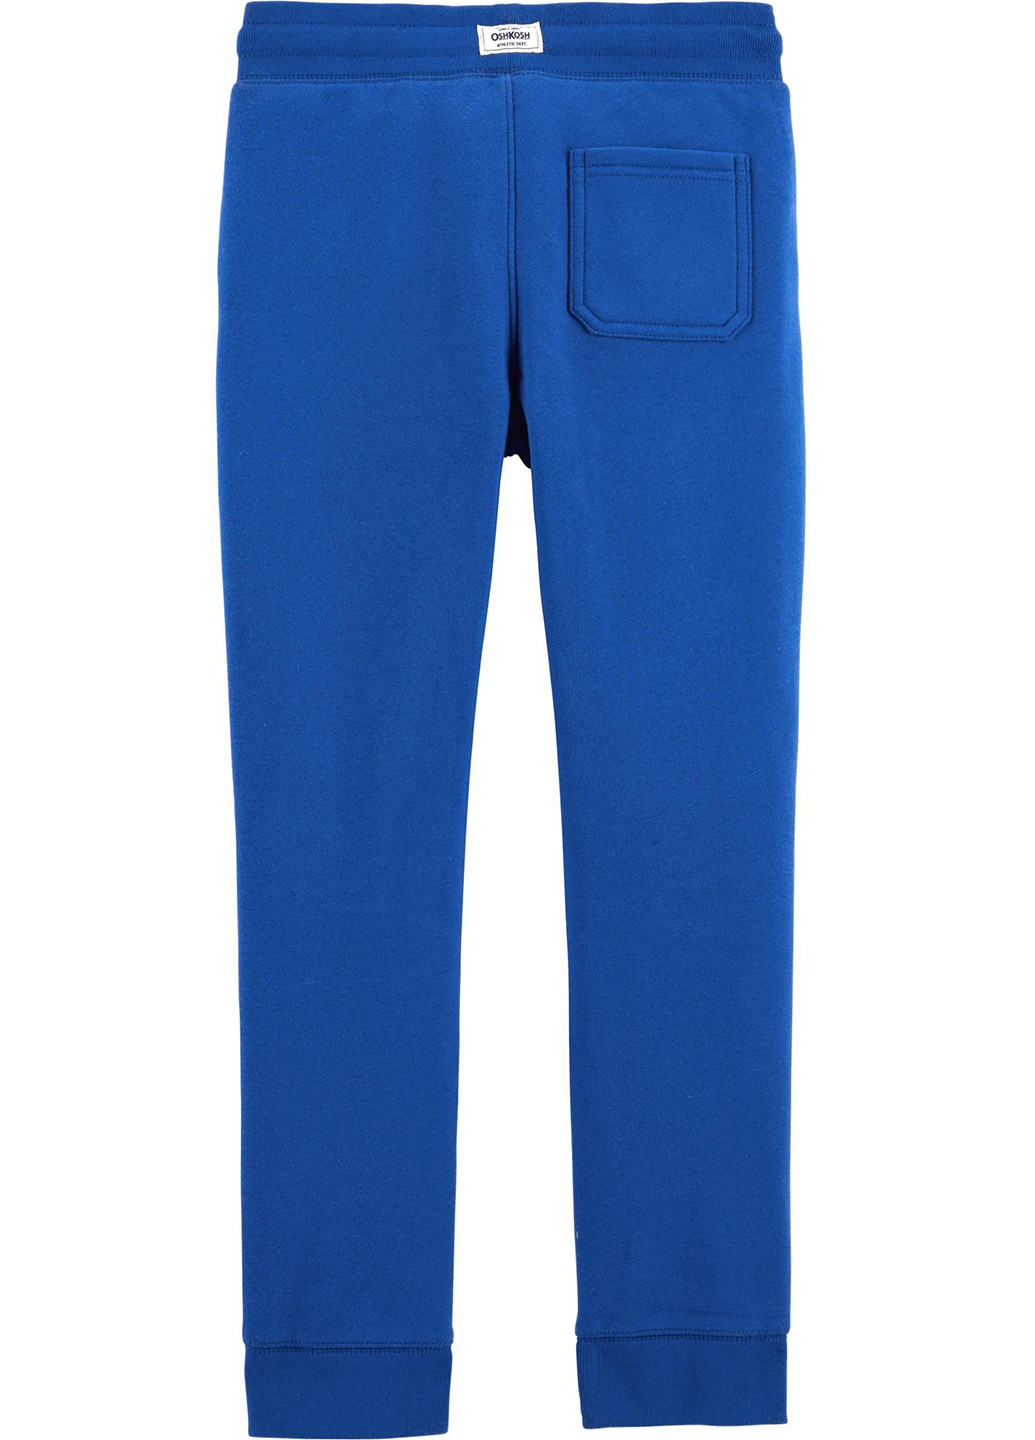 Синие кэжуал демисезонные брюки со средней талией OshKosh